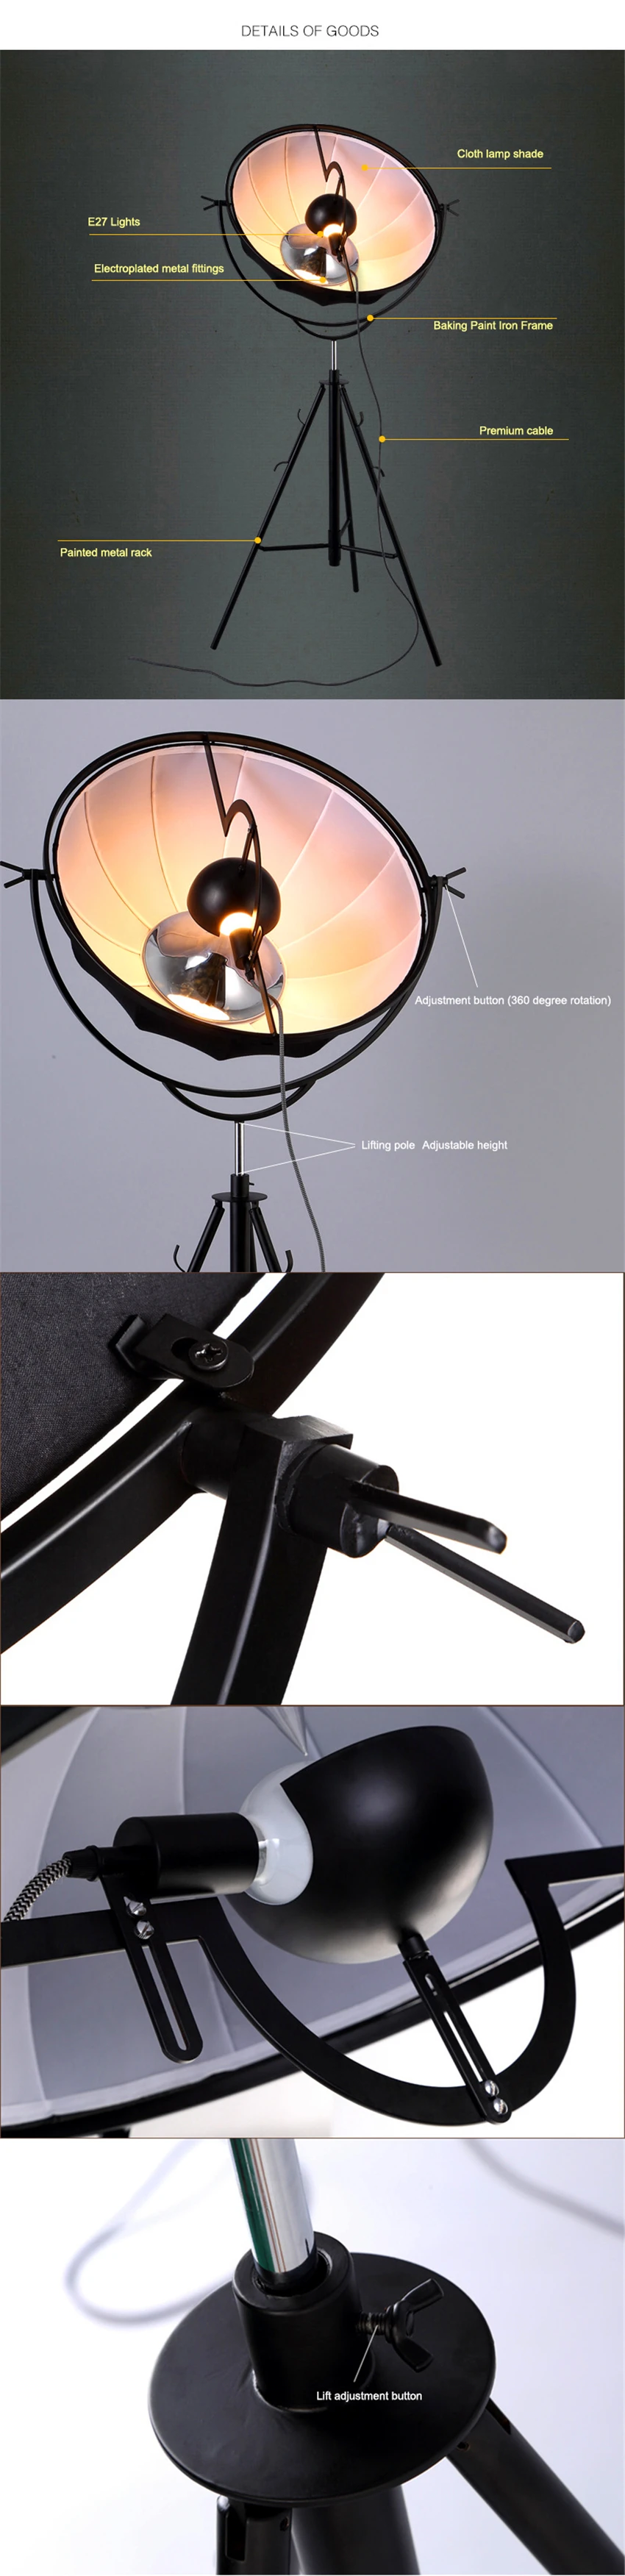 Скандинавские напольные лампы Стенд Свет Классический напольный свет фотография свет спутниковой формы фотостудия гостиная световые